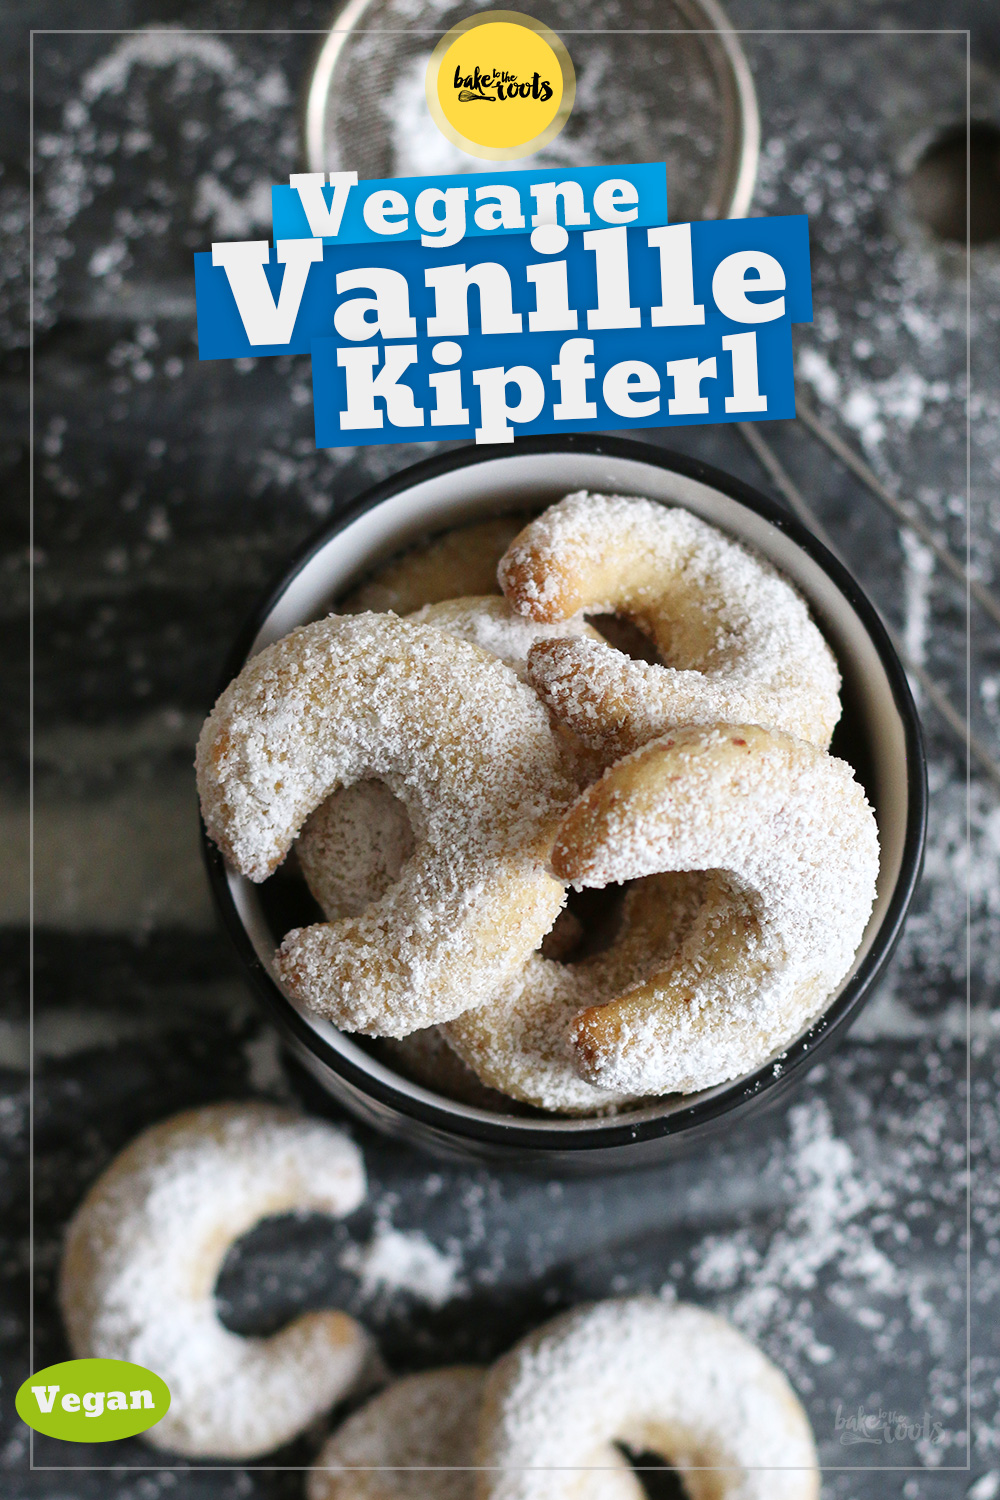 Vegane Vanillekipferl | Bake to the roots